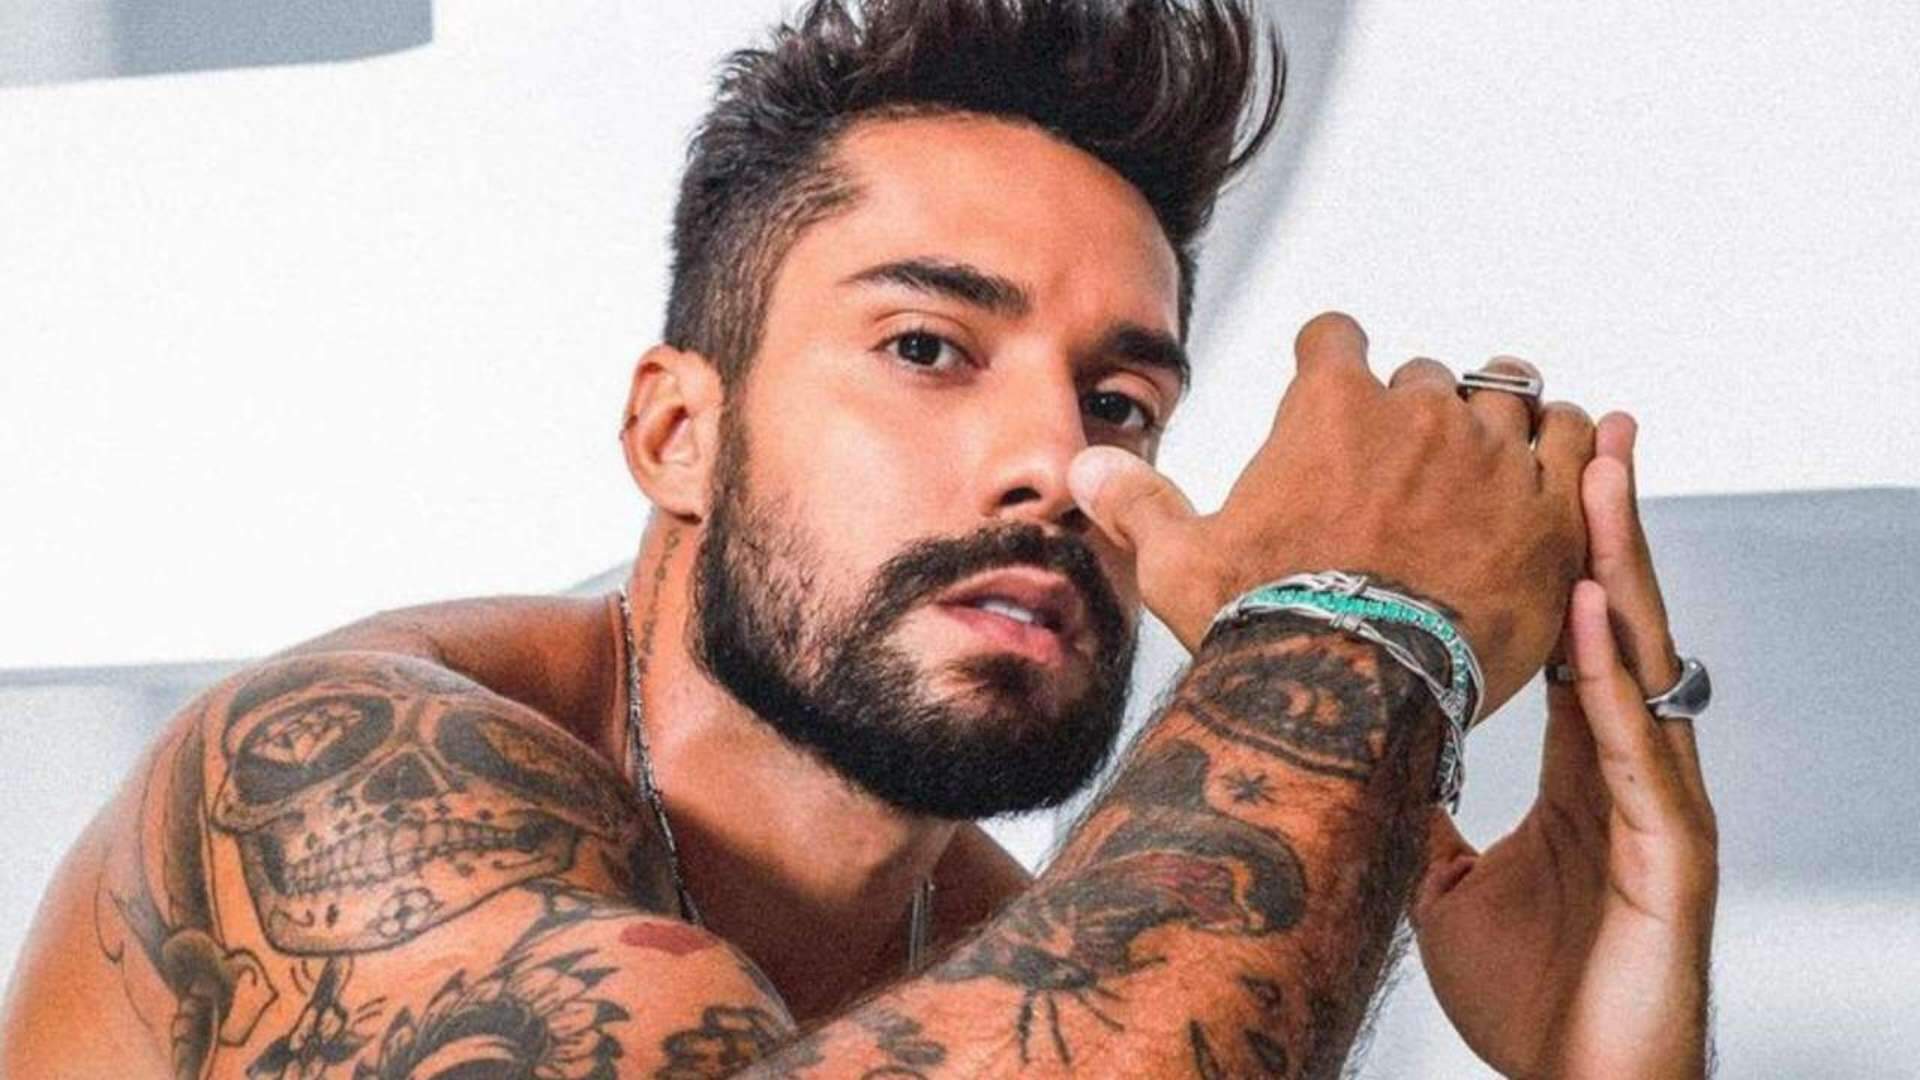 Fila andou! Após término com Erika Schneider, Bil Araújo vive romance com cantora brasileira - Metropolitana FM